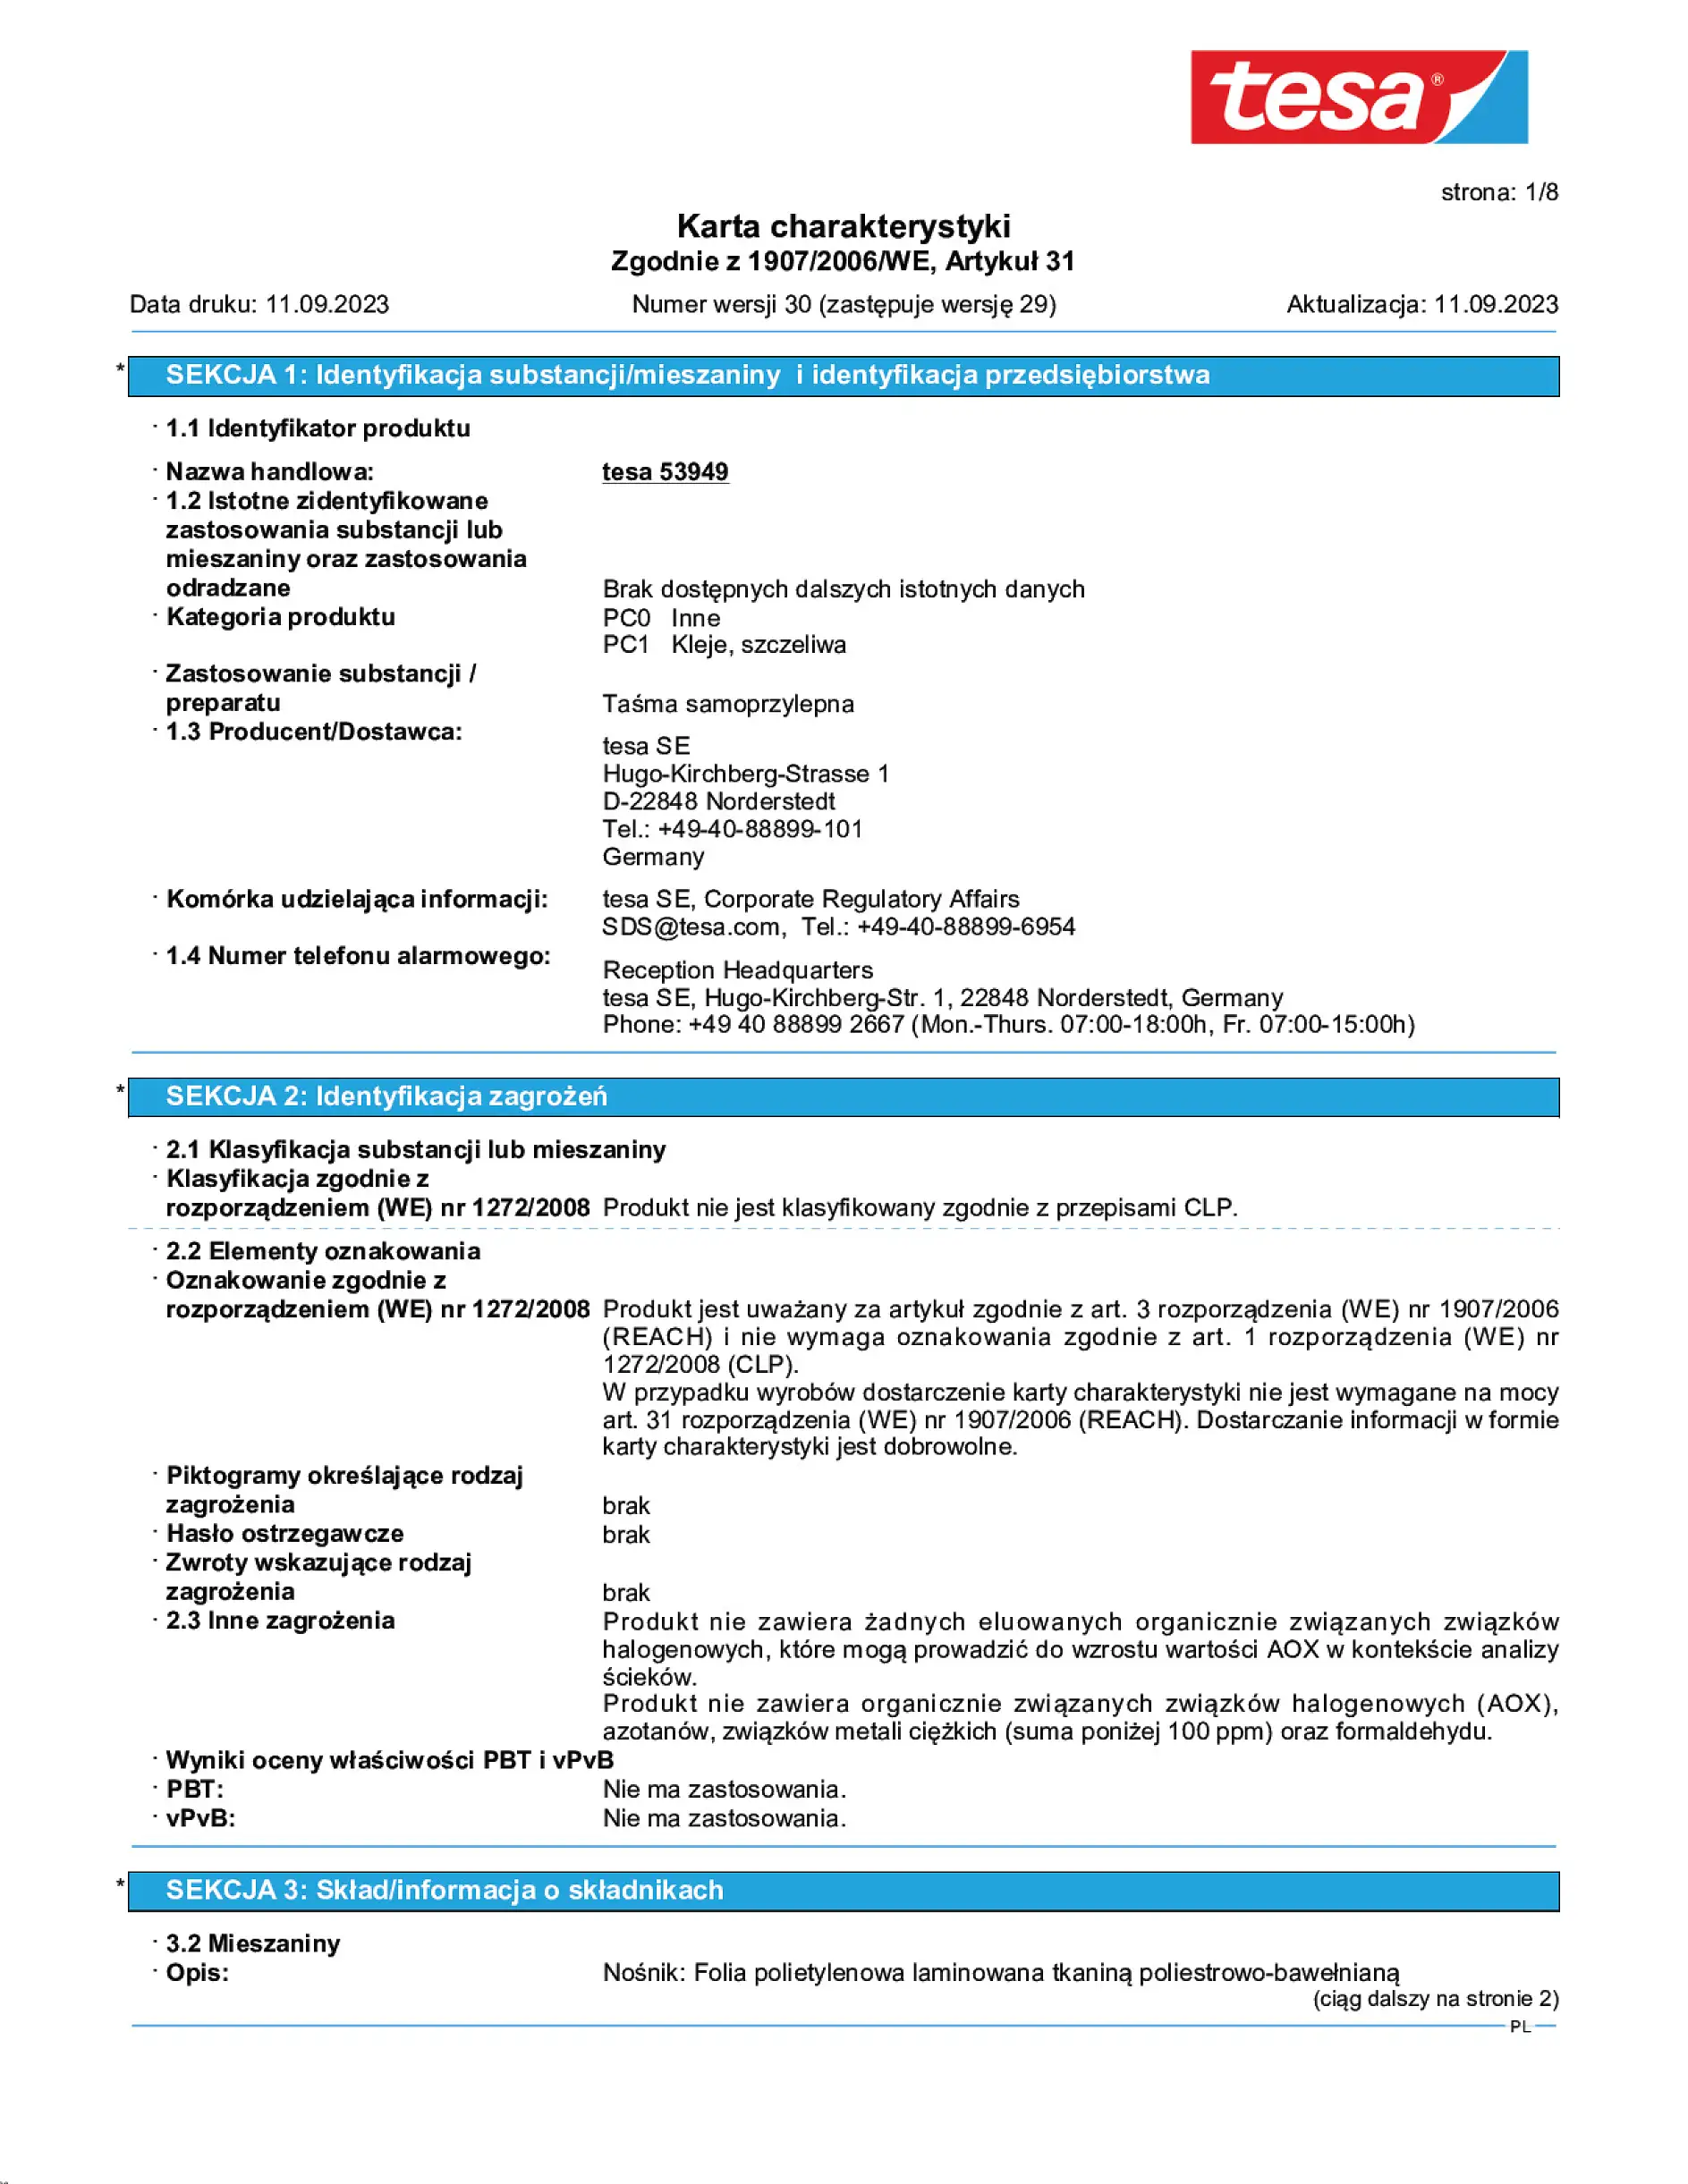 Safety data sheet_tesa® Professional 53949_pl-PL_v30